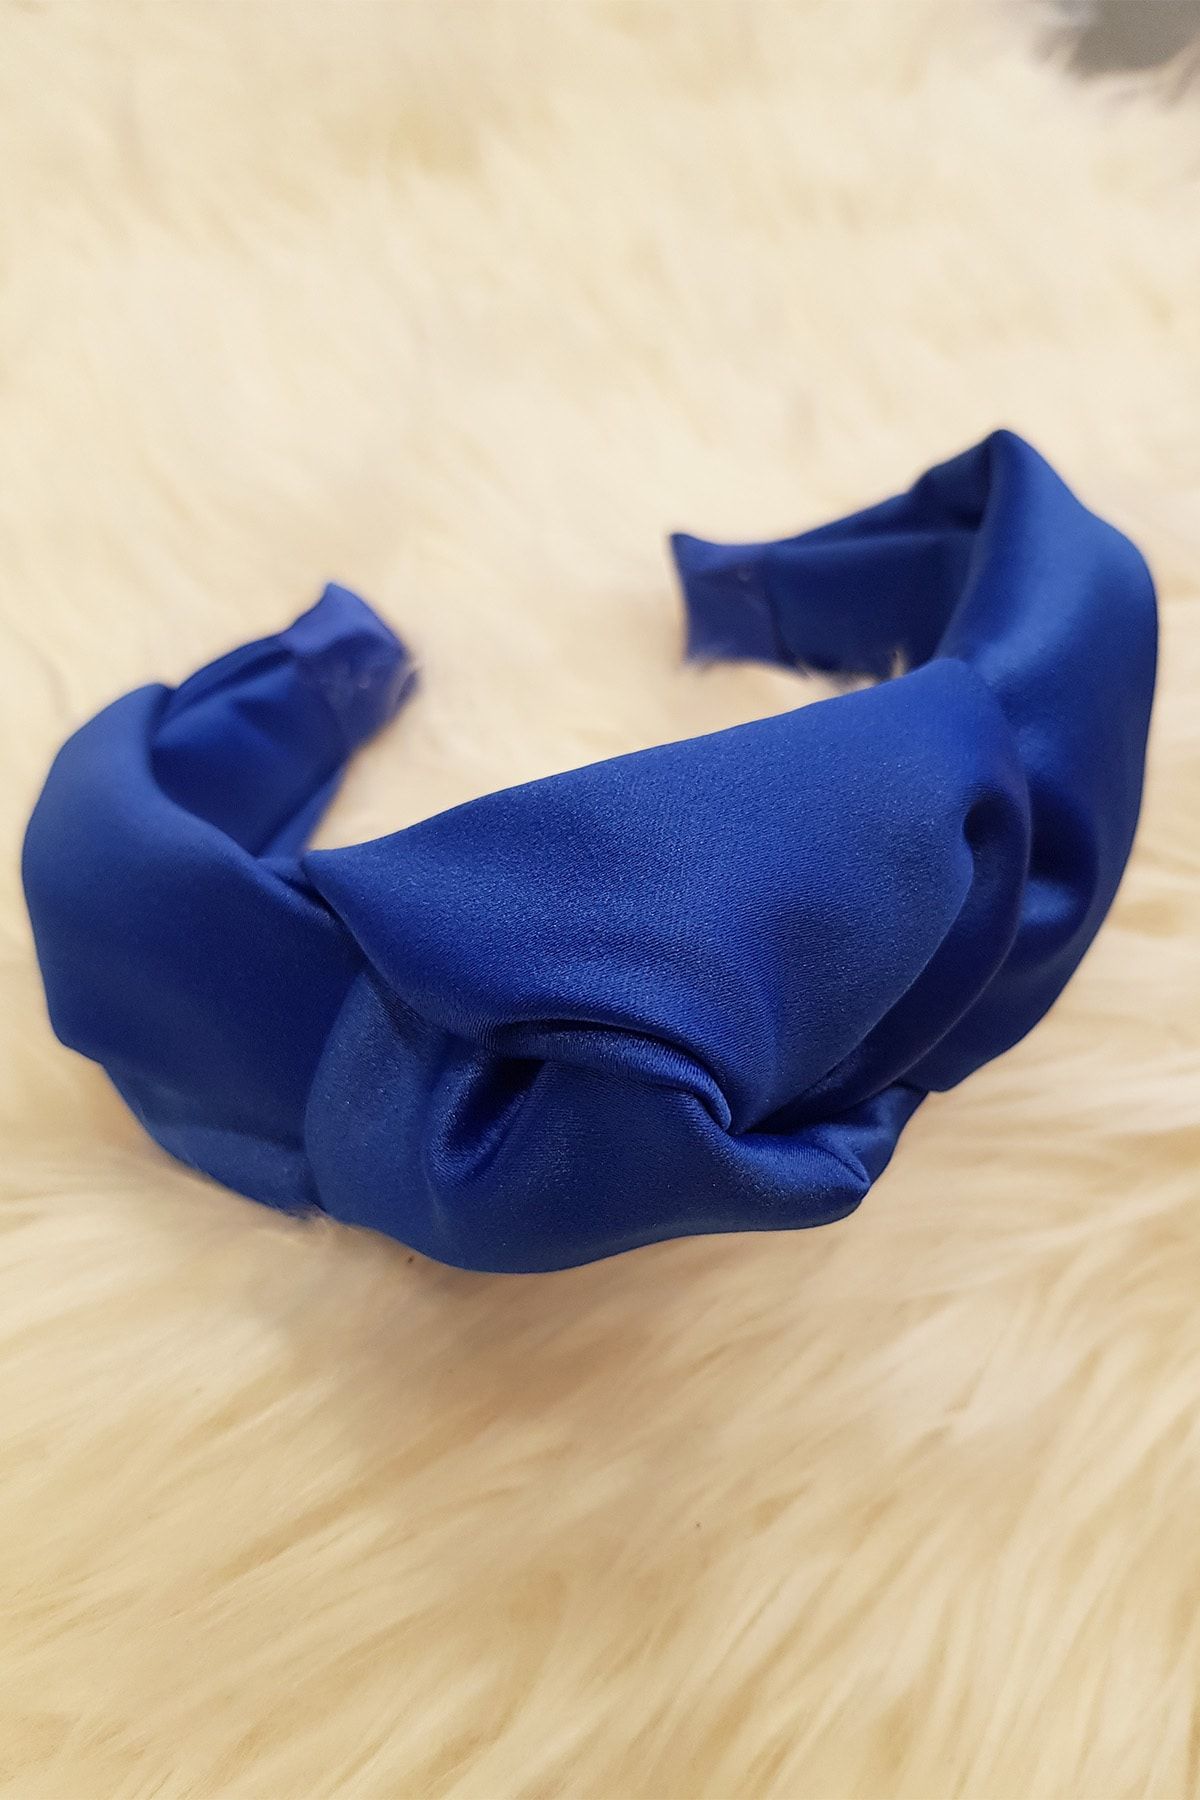 BAHELS Kadın Saks Mavi Renk Saten Düğümlü Lüx Model Taç Saç Bandı